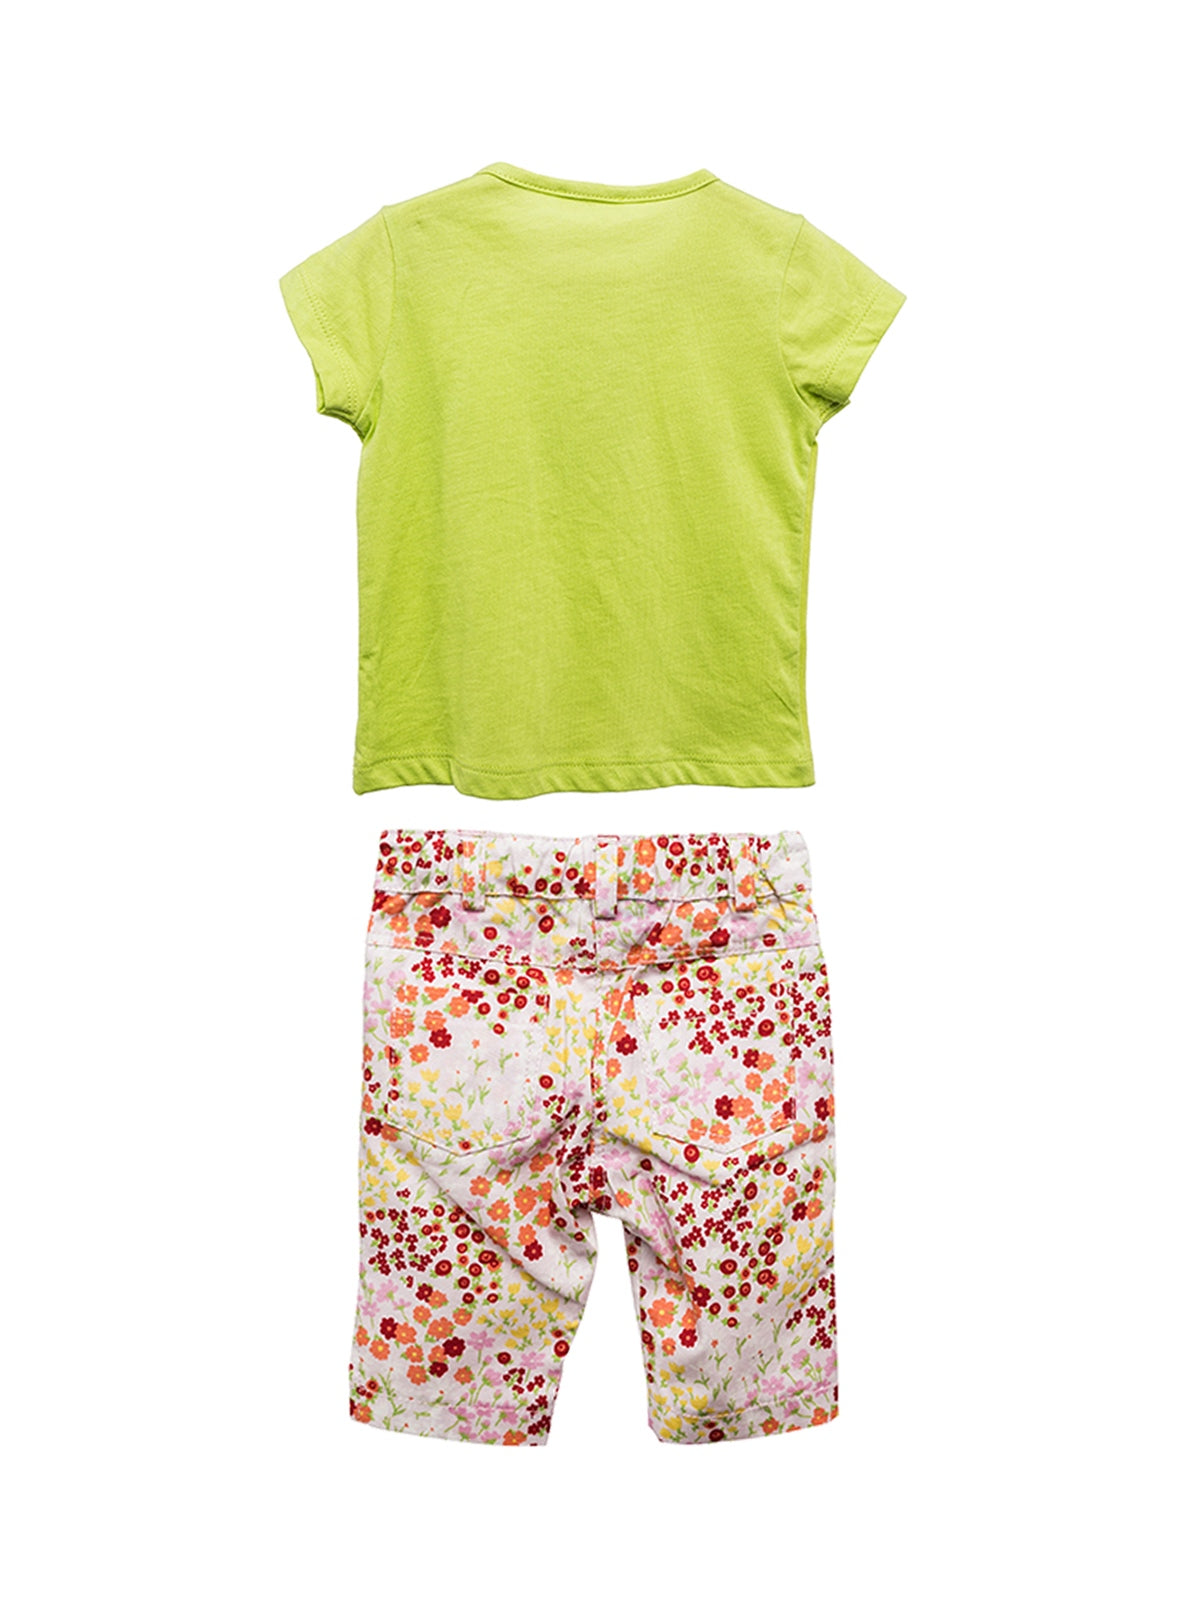 Kız Bebek Yeşil Baskılı T-shirt ve Çiçekli Pantolon Takım (6ay-4yaş)-1